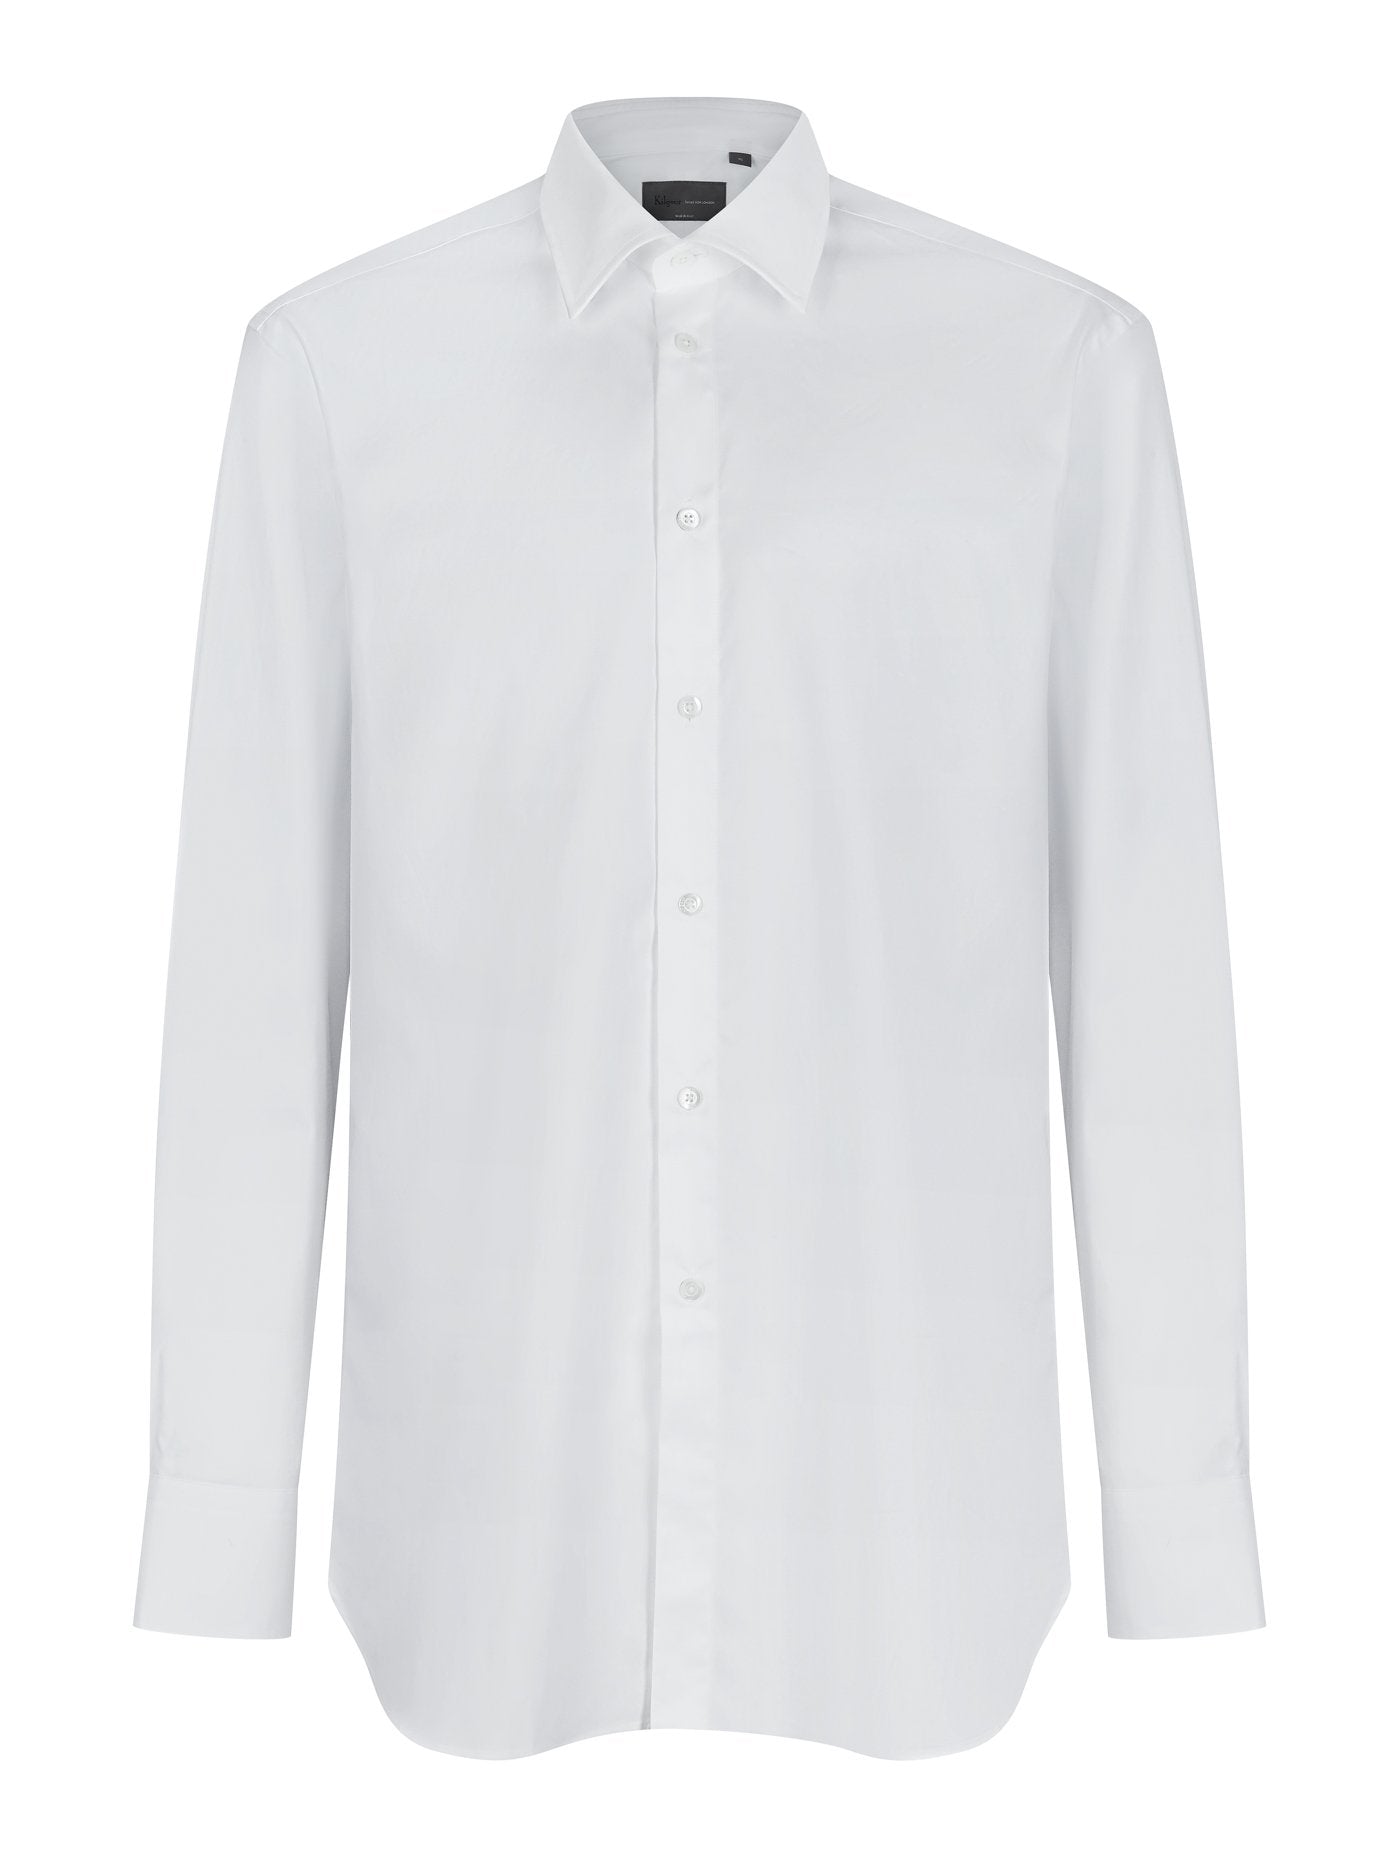 Oxford Cotton Shirt White | Kilgour Tailoring Savile Row